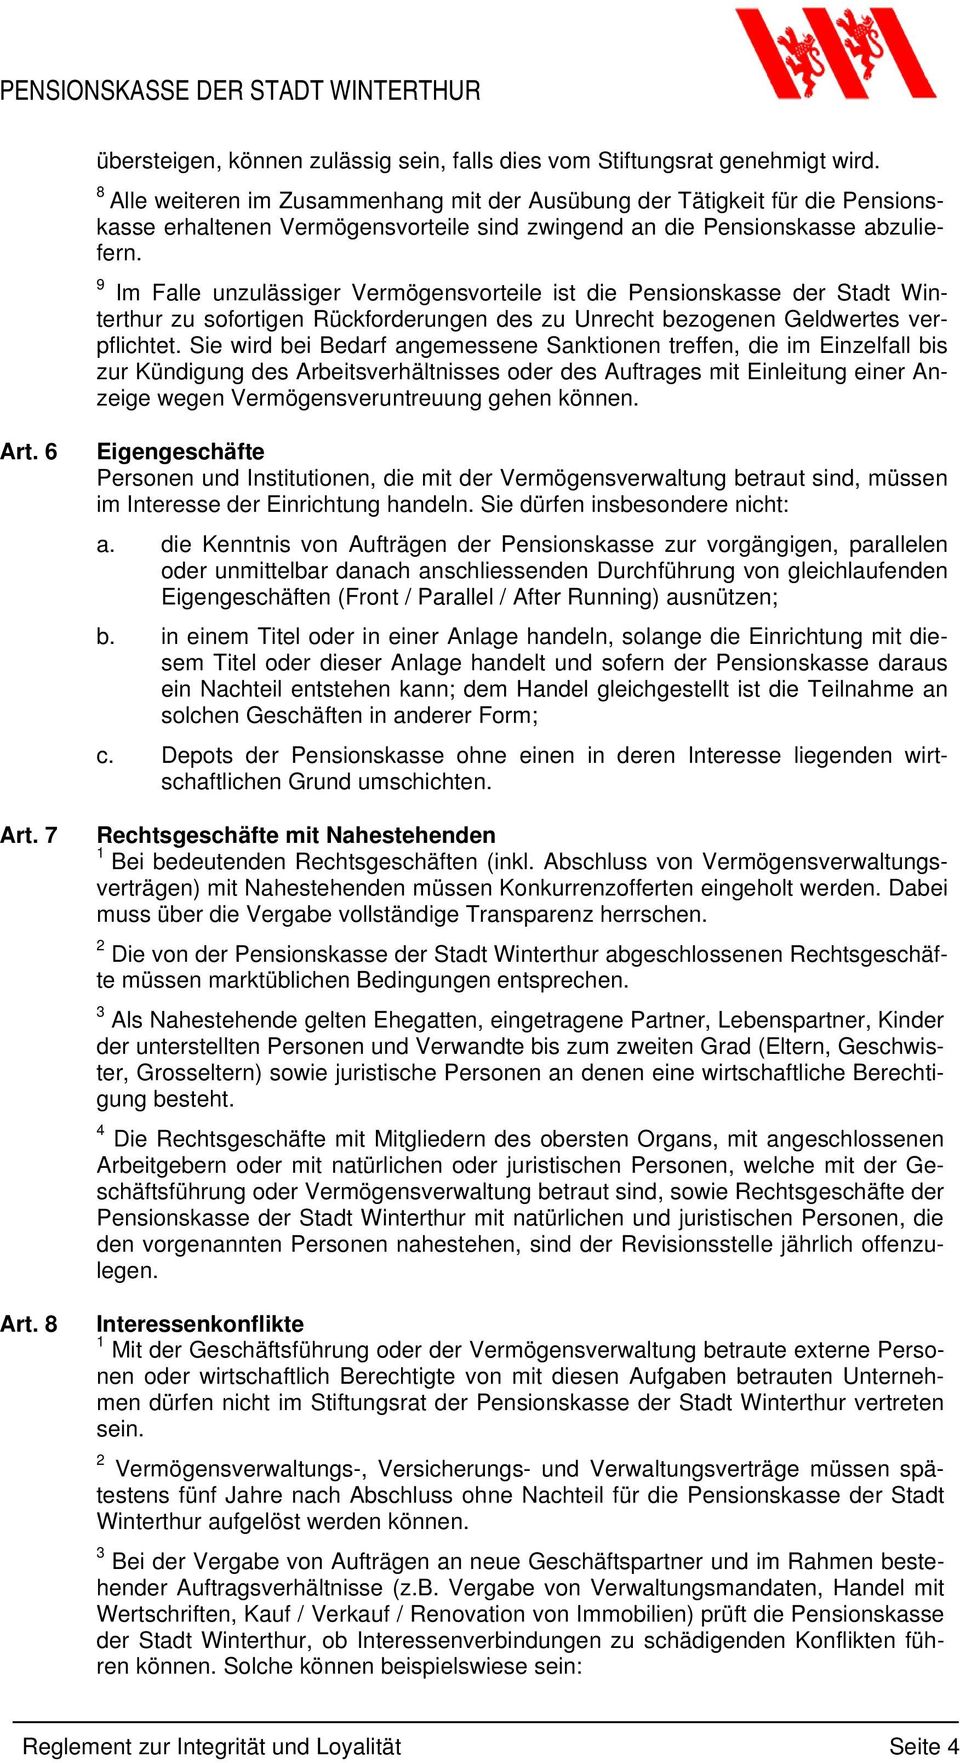 9 Im Falle unzulässiger Vermögensvorteile ist die Pensionskasse der Stadt Winterthur zu sofortigen Rückforderungen des zu Unrecht bezogenen Geldwertes verpflichtet.